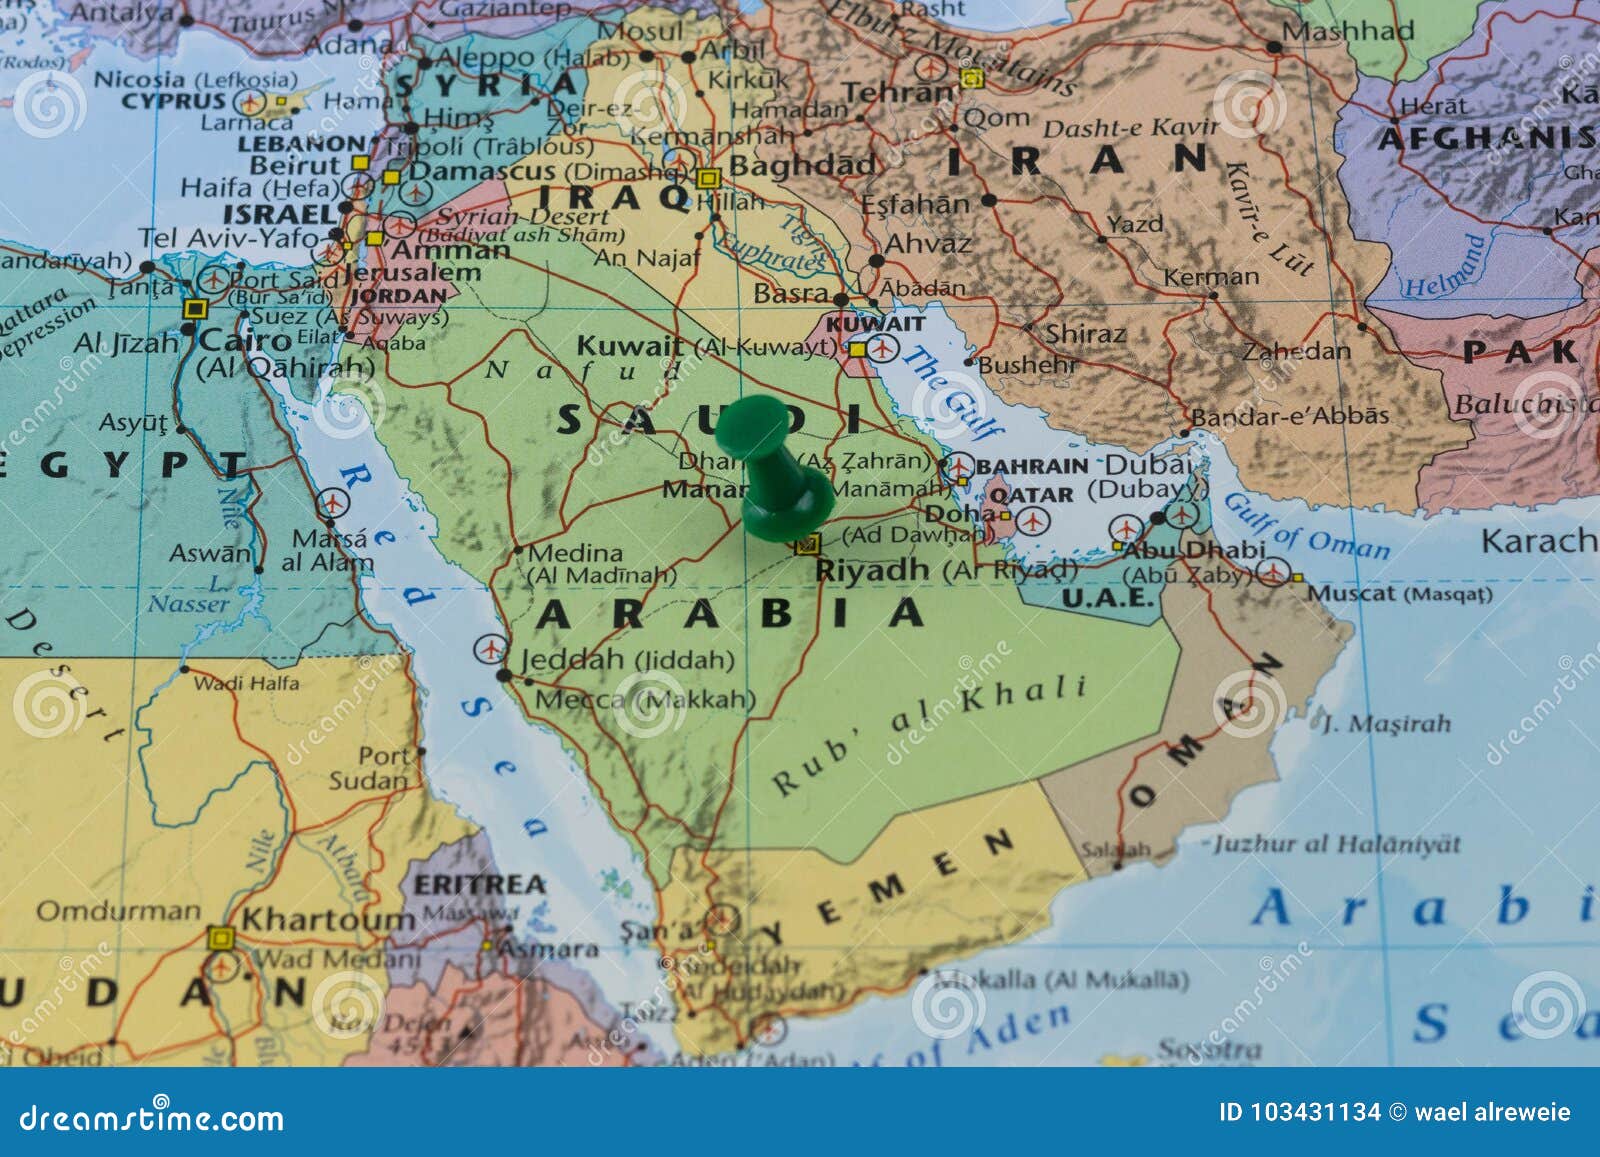 Персидский залив какие страны. Карта государств Персидского залива. Персидский залив – Саудовская Аравия на карте. Политическая карта Персидского залива.